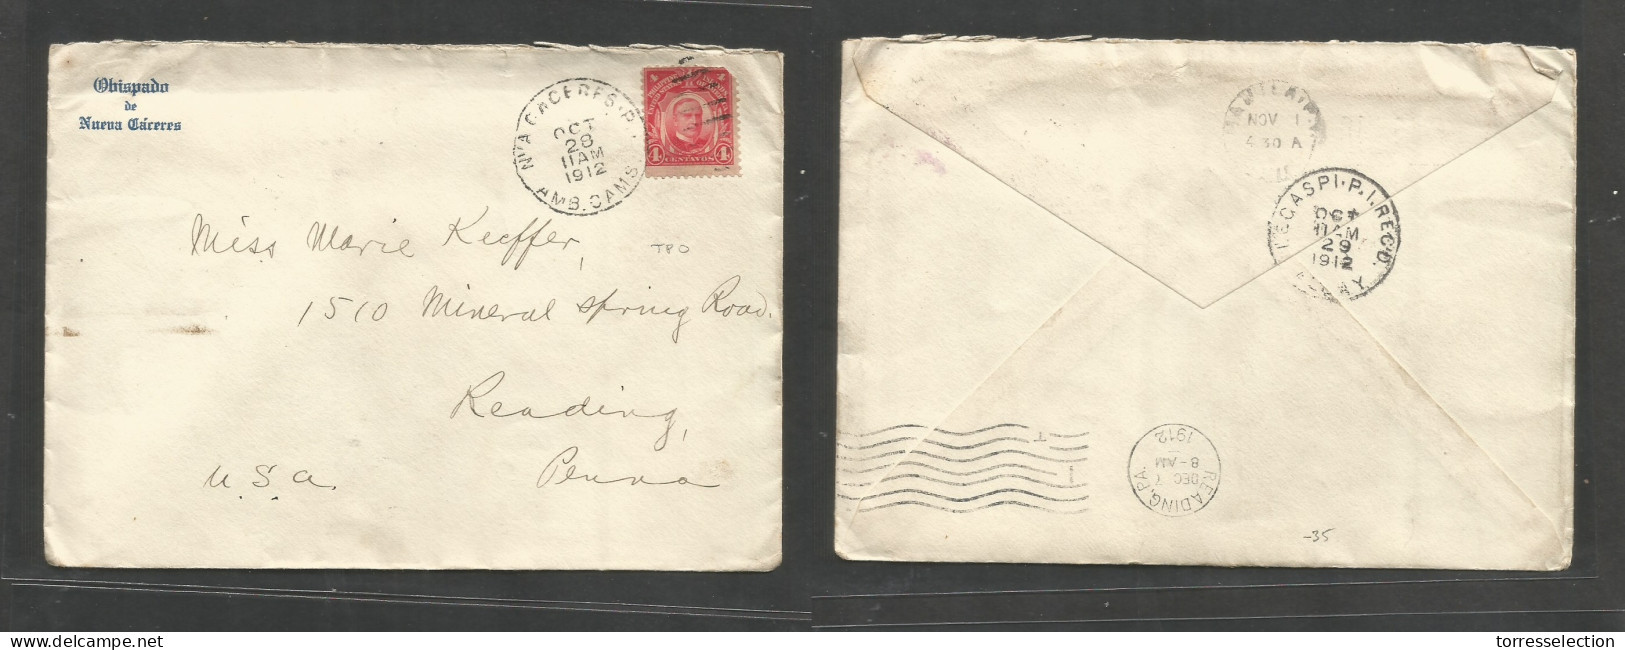 PHILIPPINES. 1912 (Oct 28) Nueva Caceres, Aub Cams - USA, Reading, PA (Dec 7) Obispado Fkd Envelope, TPO Cds. Reverse Tr - Philippines